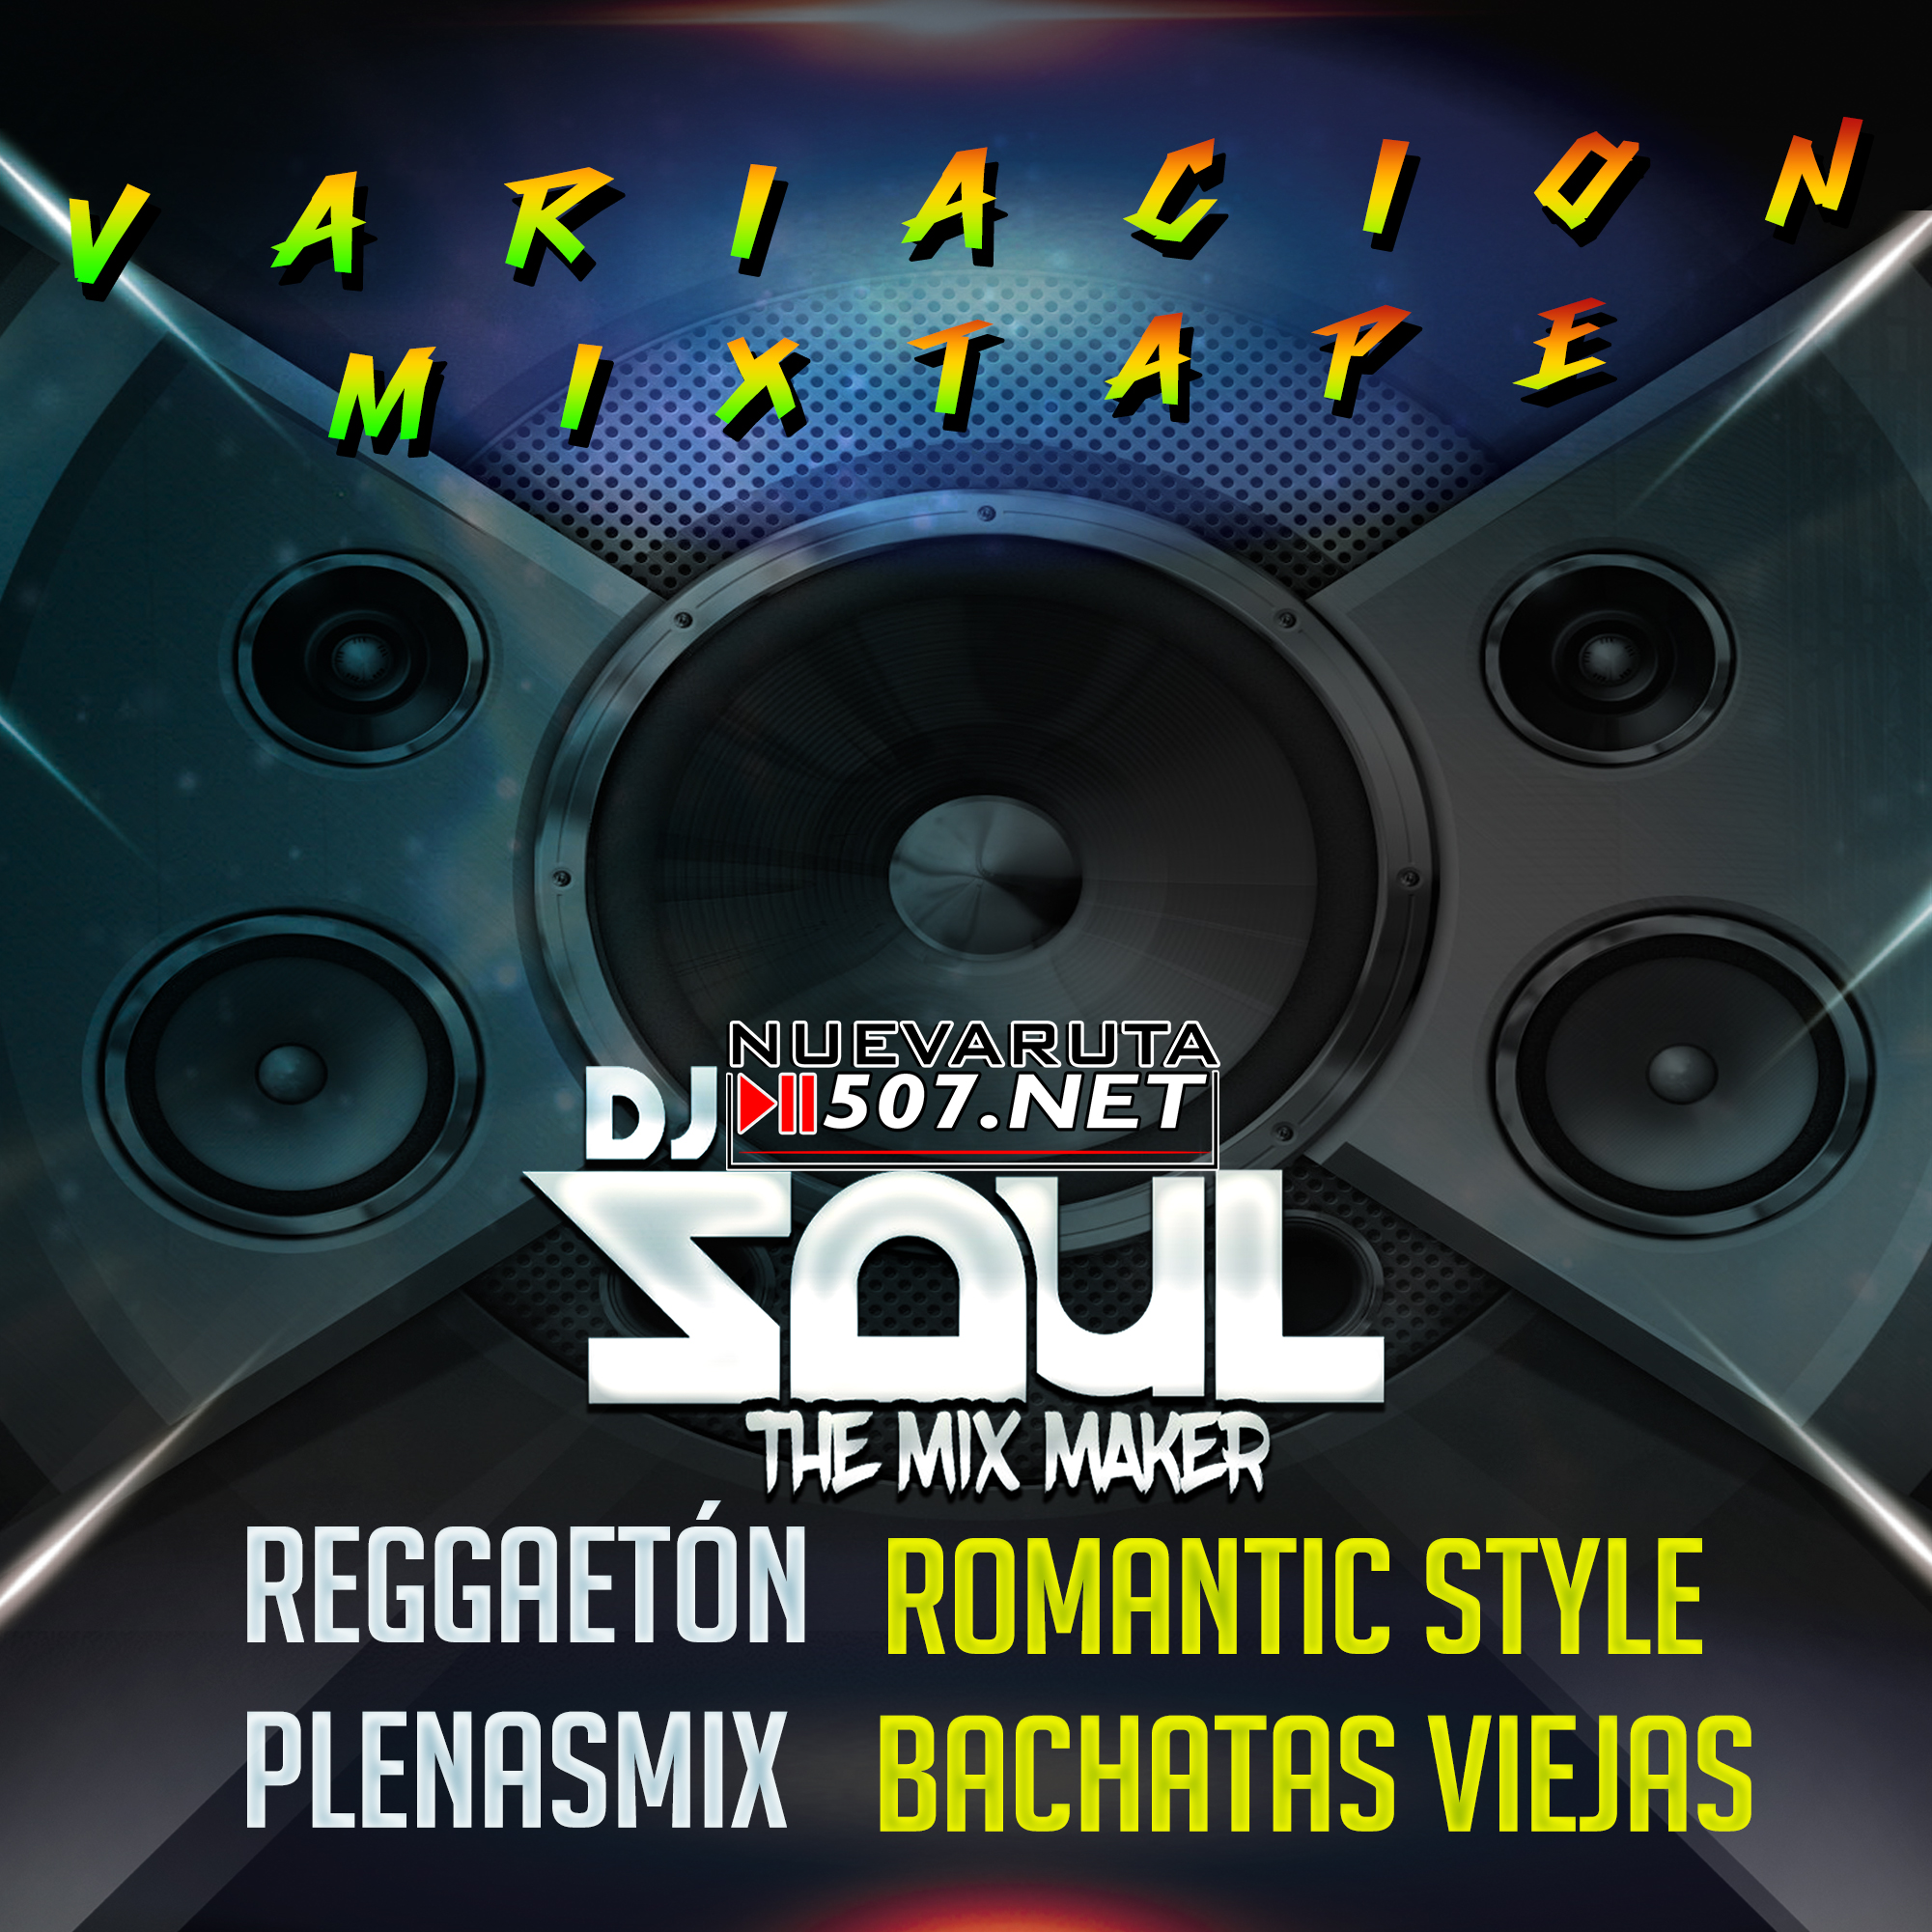 Dj Saul - Reggaeton Mix2k18.mp3